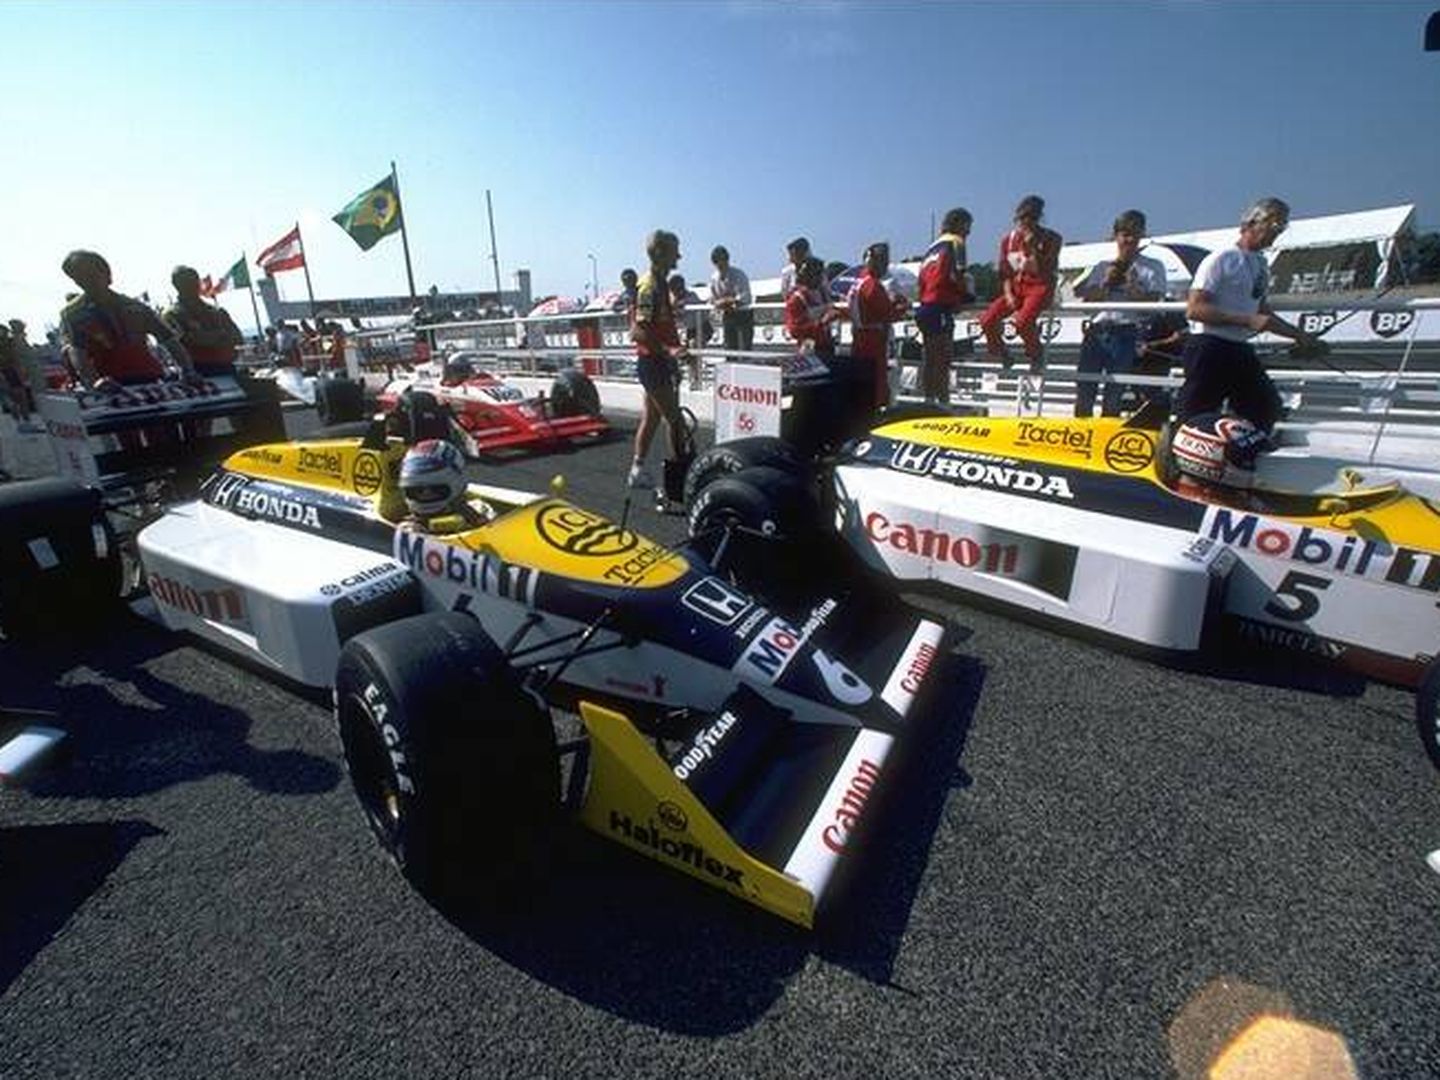 Williams fue junto a McLaren el equipo dominador en los años ochenta y noventa en la Fórmula 1. En 1986-87 con Piquet y Mansell estuvieron en otra galaxia